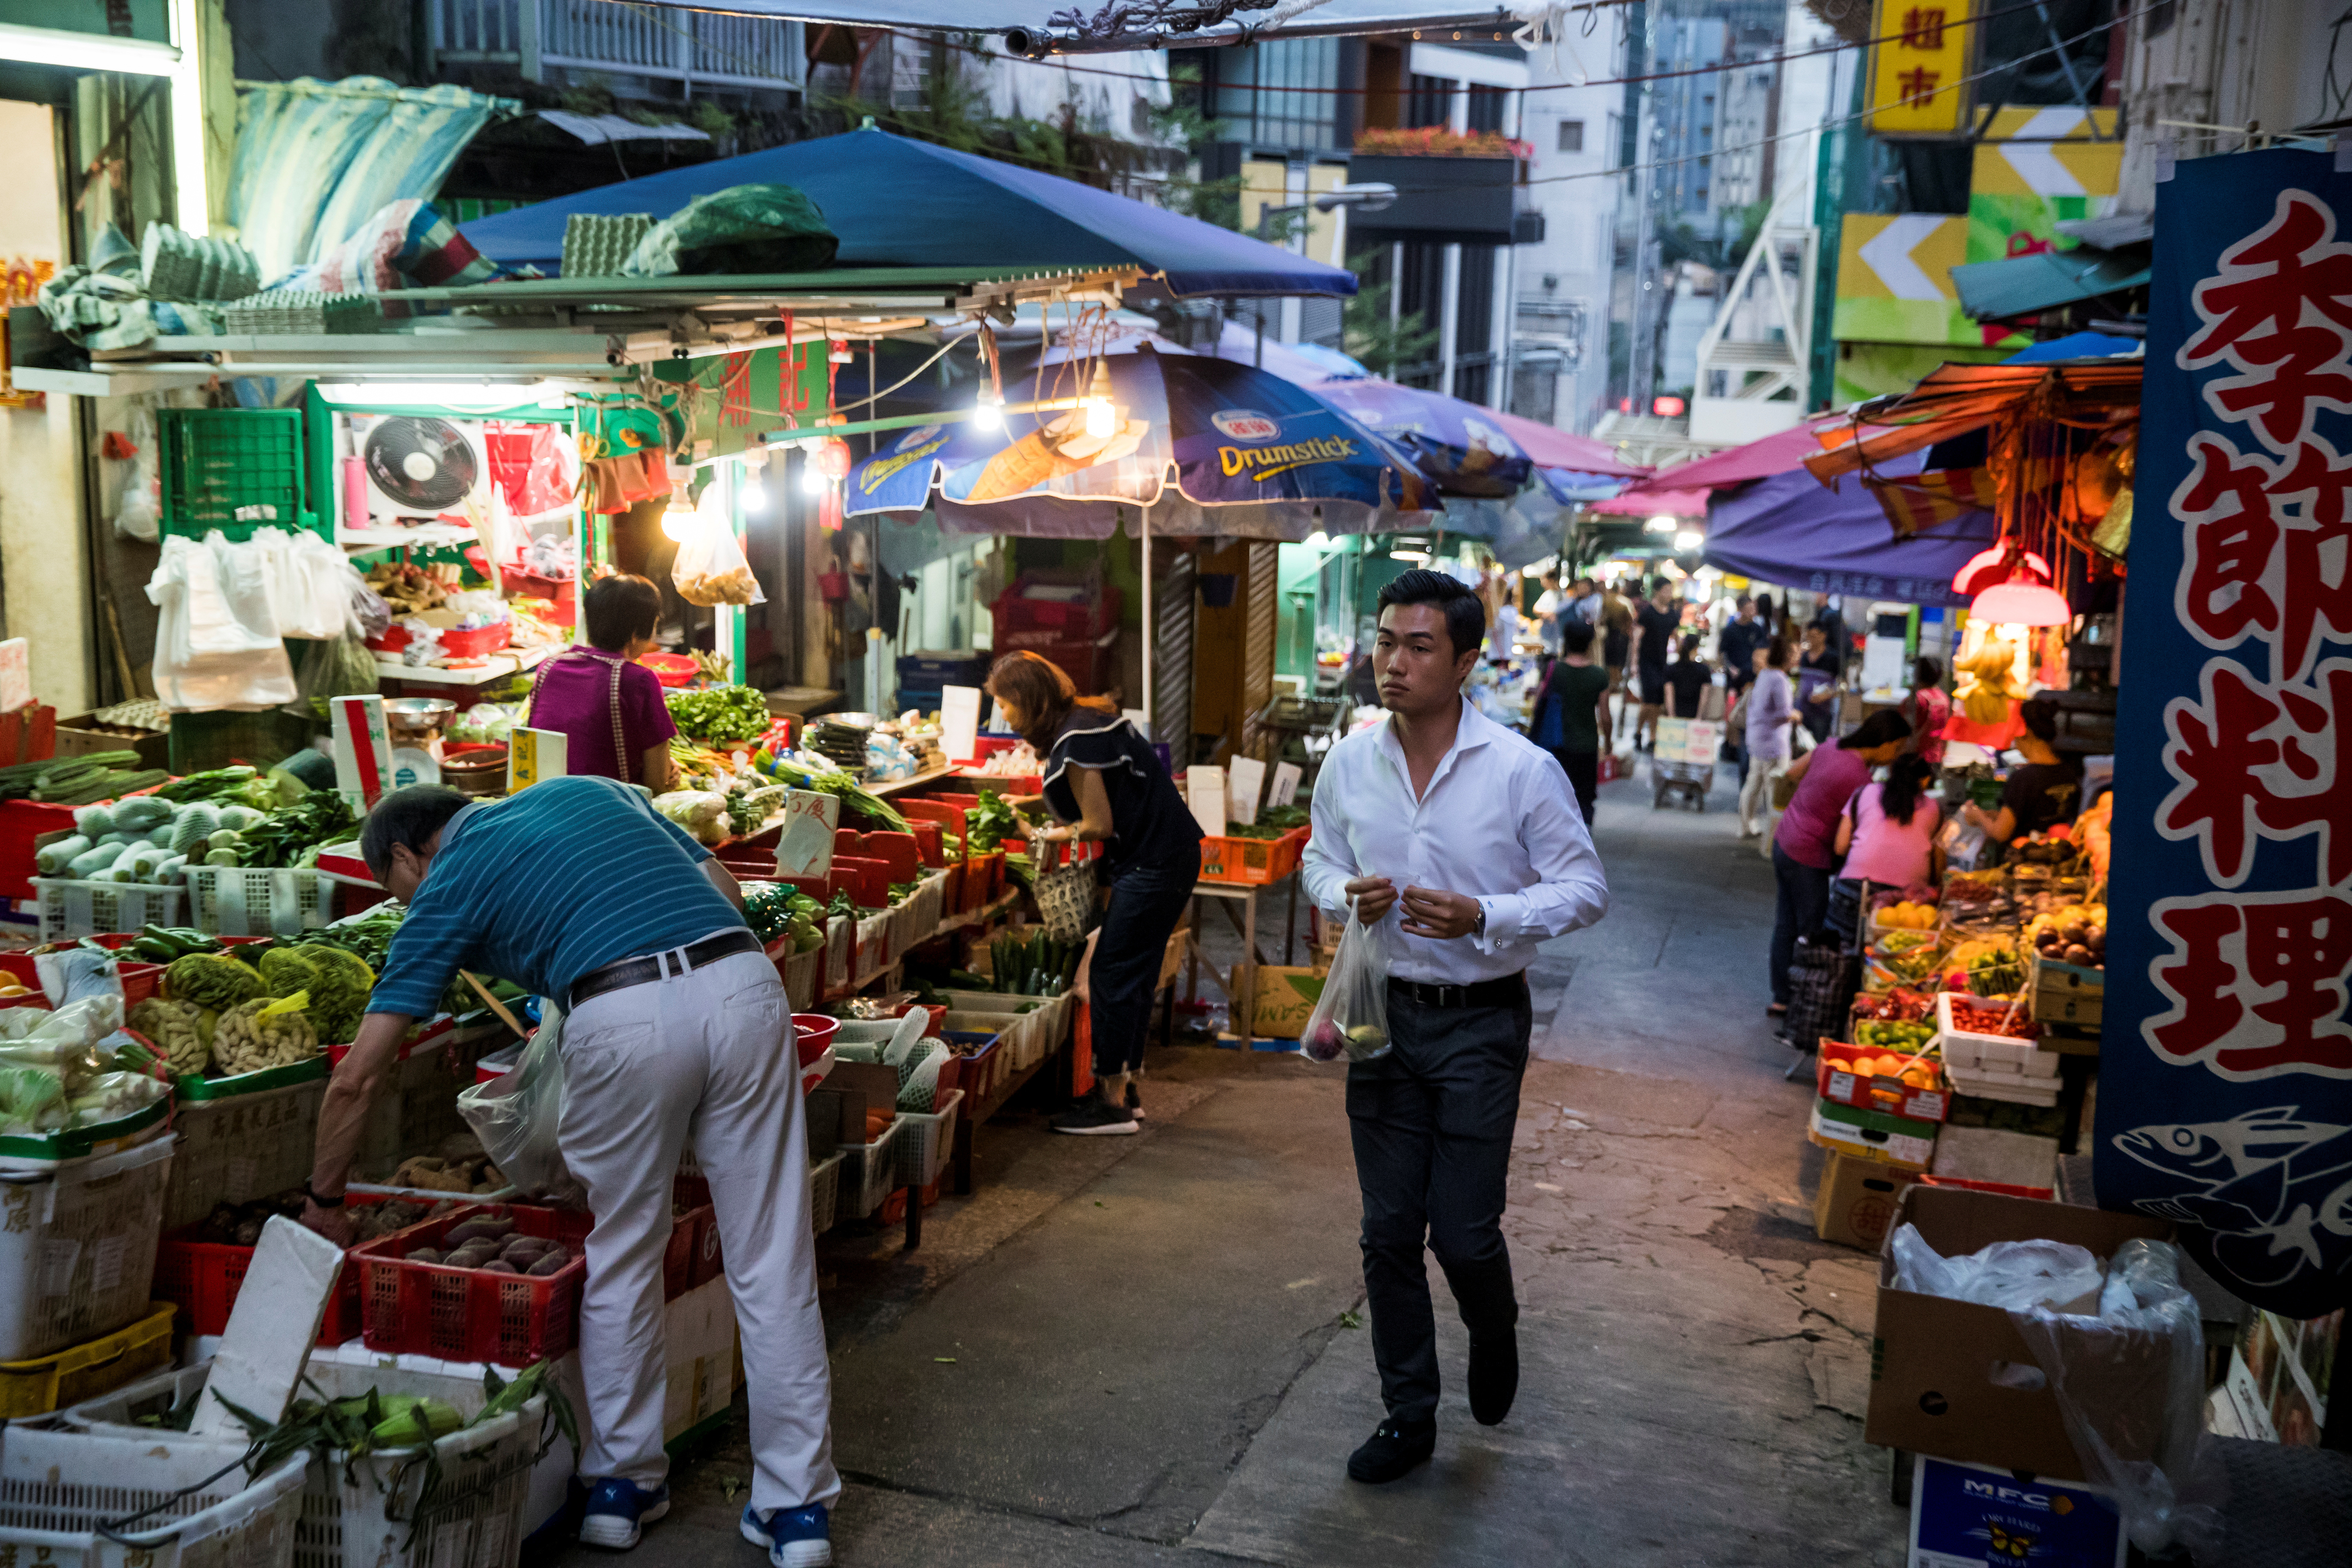 A man walks through a food market in an alley in Sheung Wan in Hong Kong